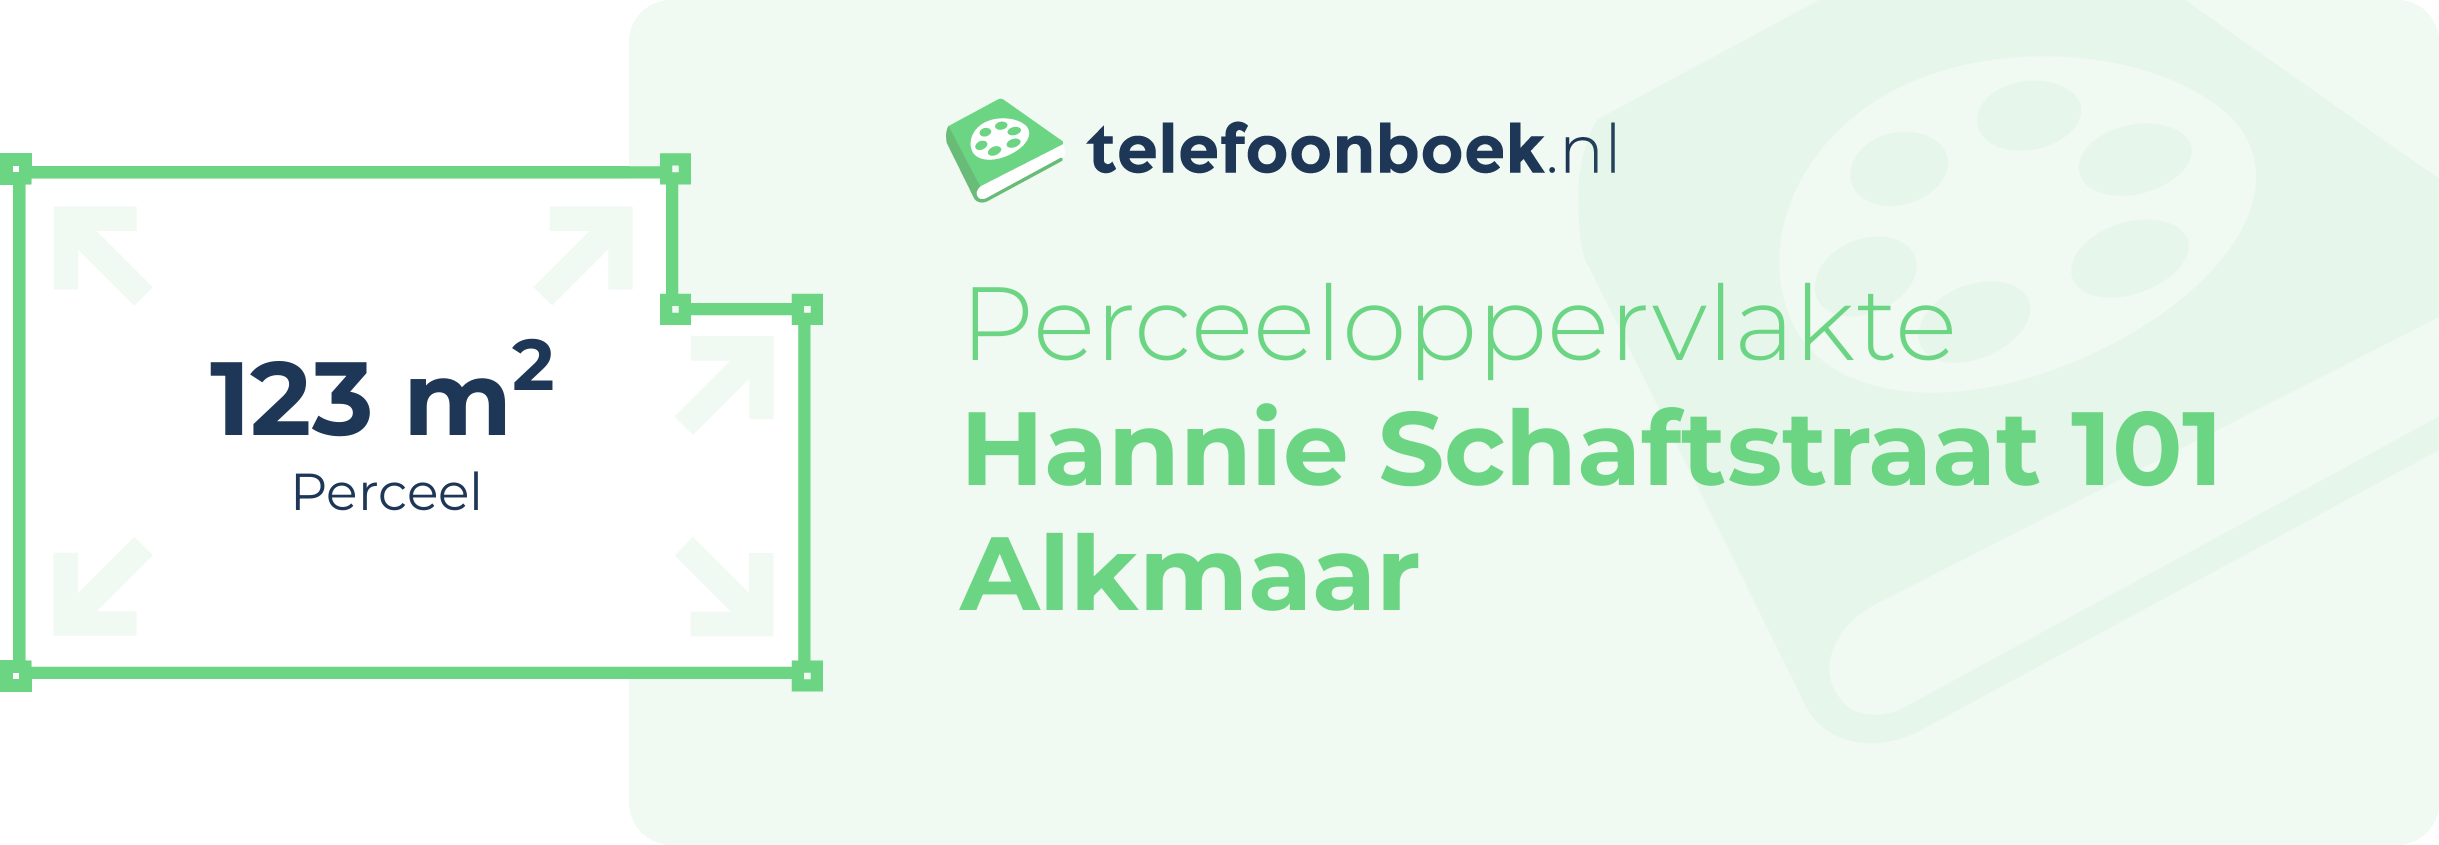 Perceeloppervlakte Hannie Schaftstraat 101 Alkmaar